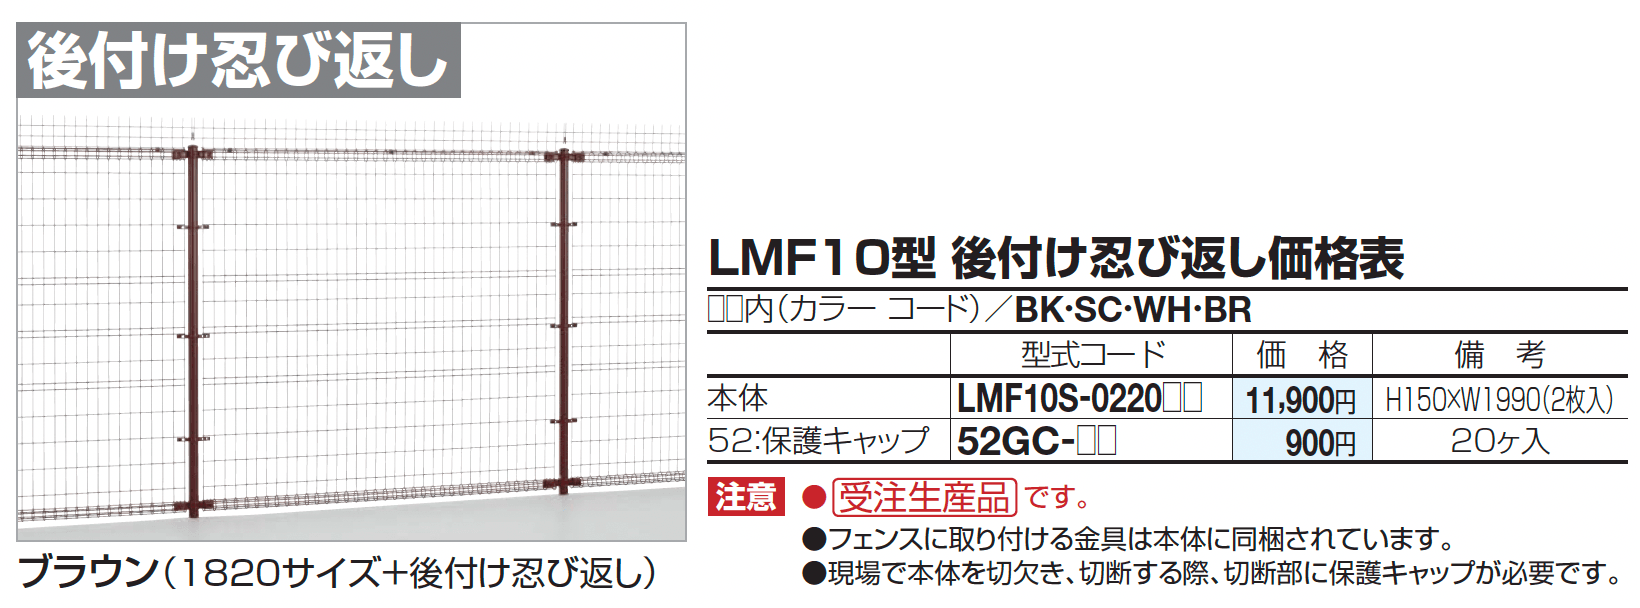 四国化成 ・LMF10型 後付け忍び返し1